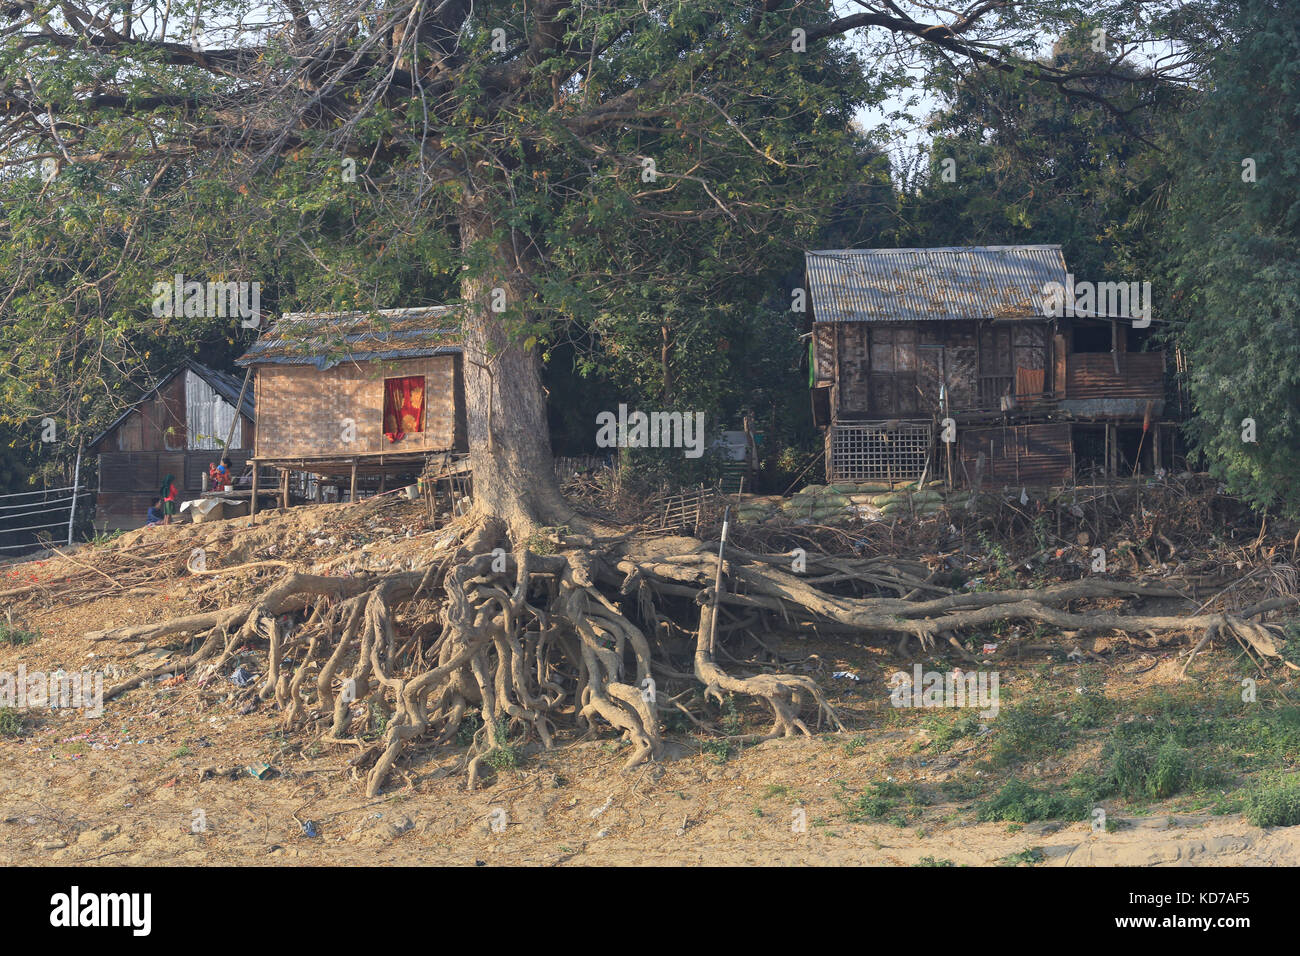 Un grand arbre avec les racines exposées couvre la rive à minhla village sur le fleuve Irrawaddy en Birmanie (Myanmar). Banque D'Images